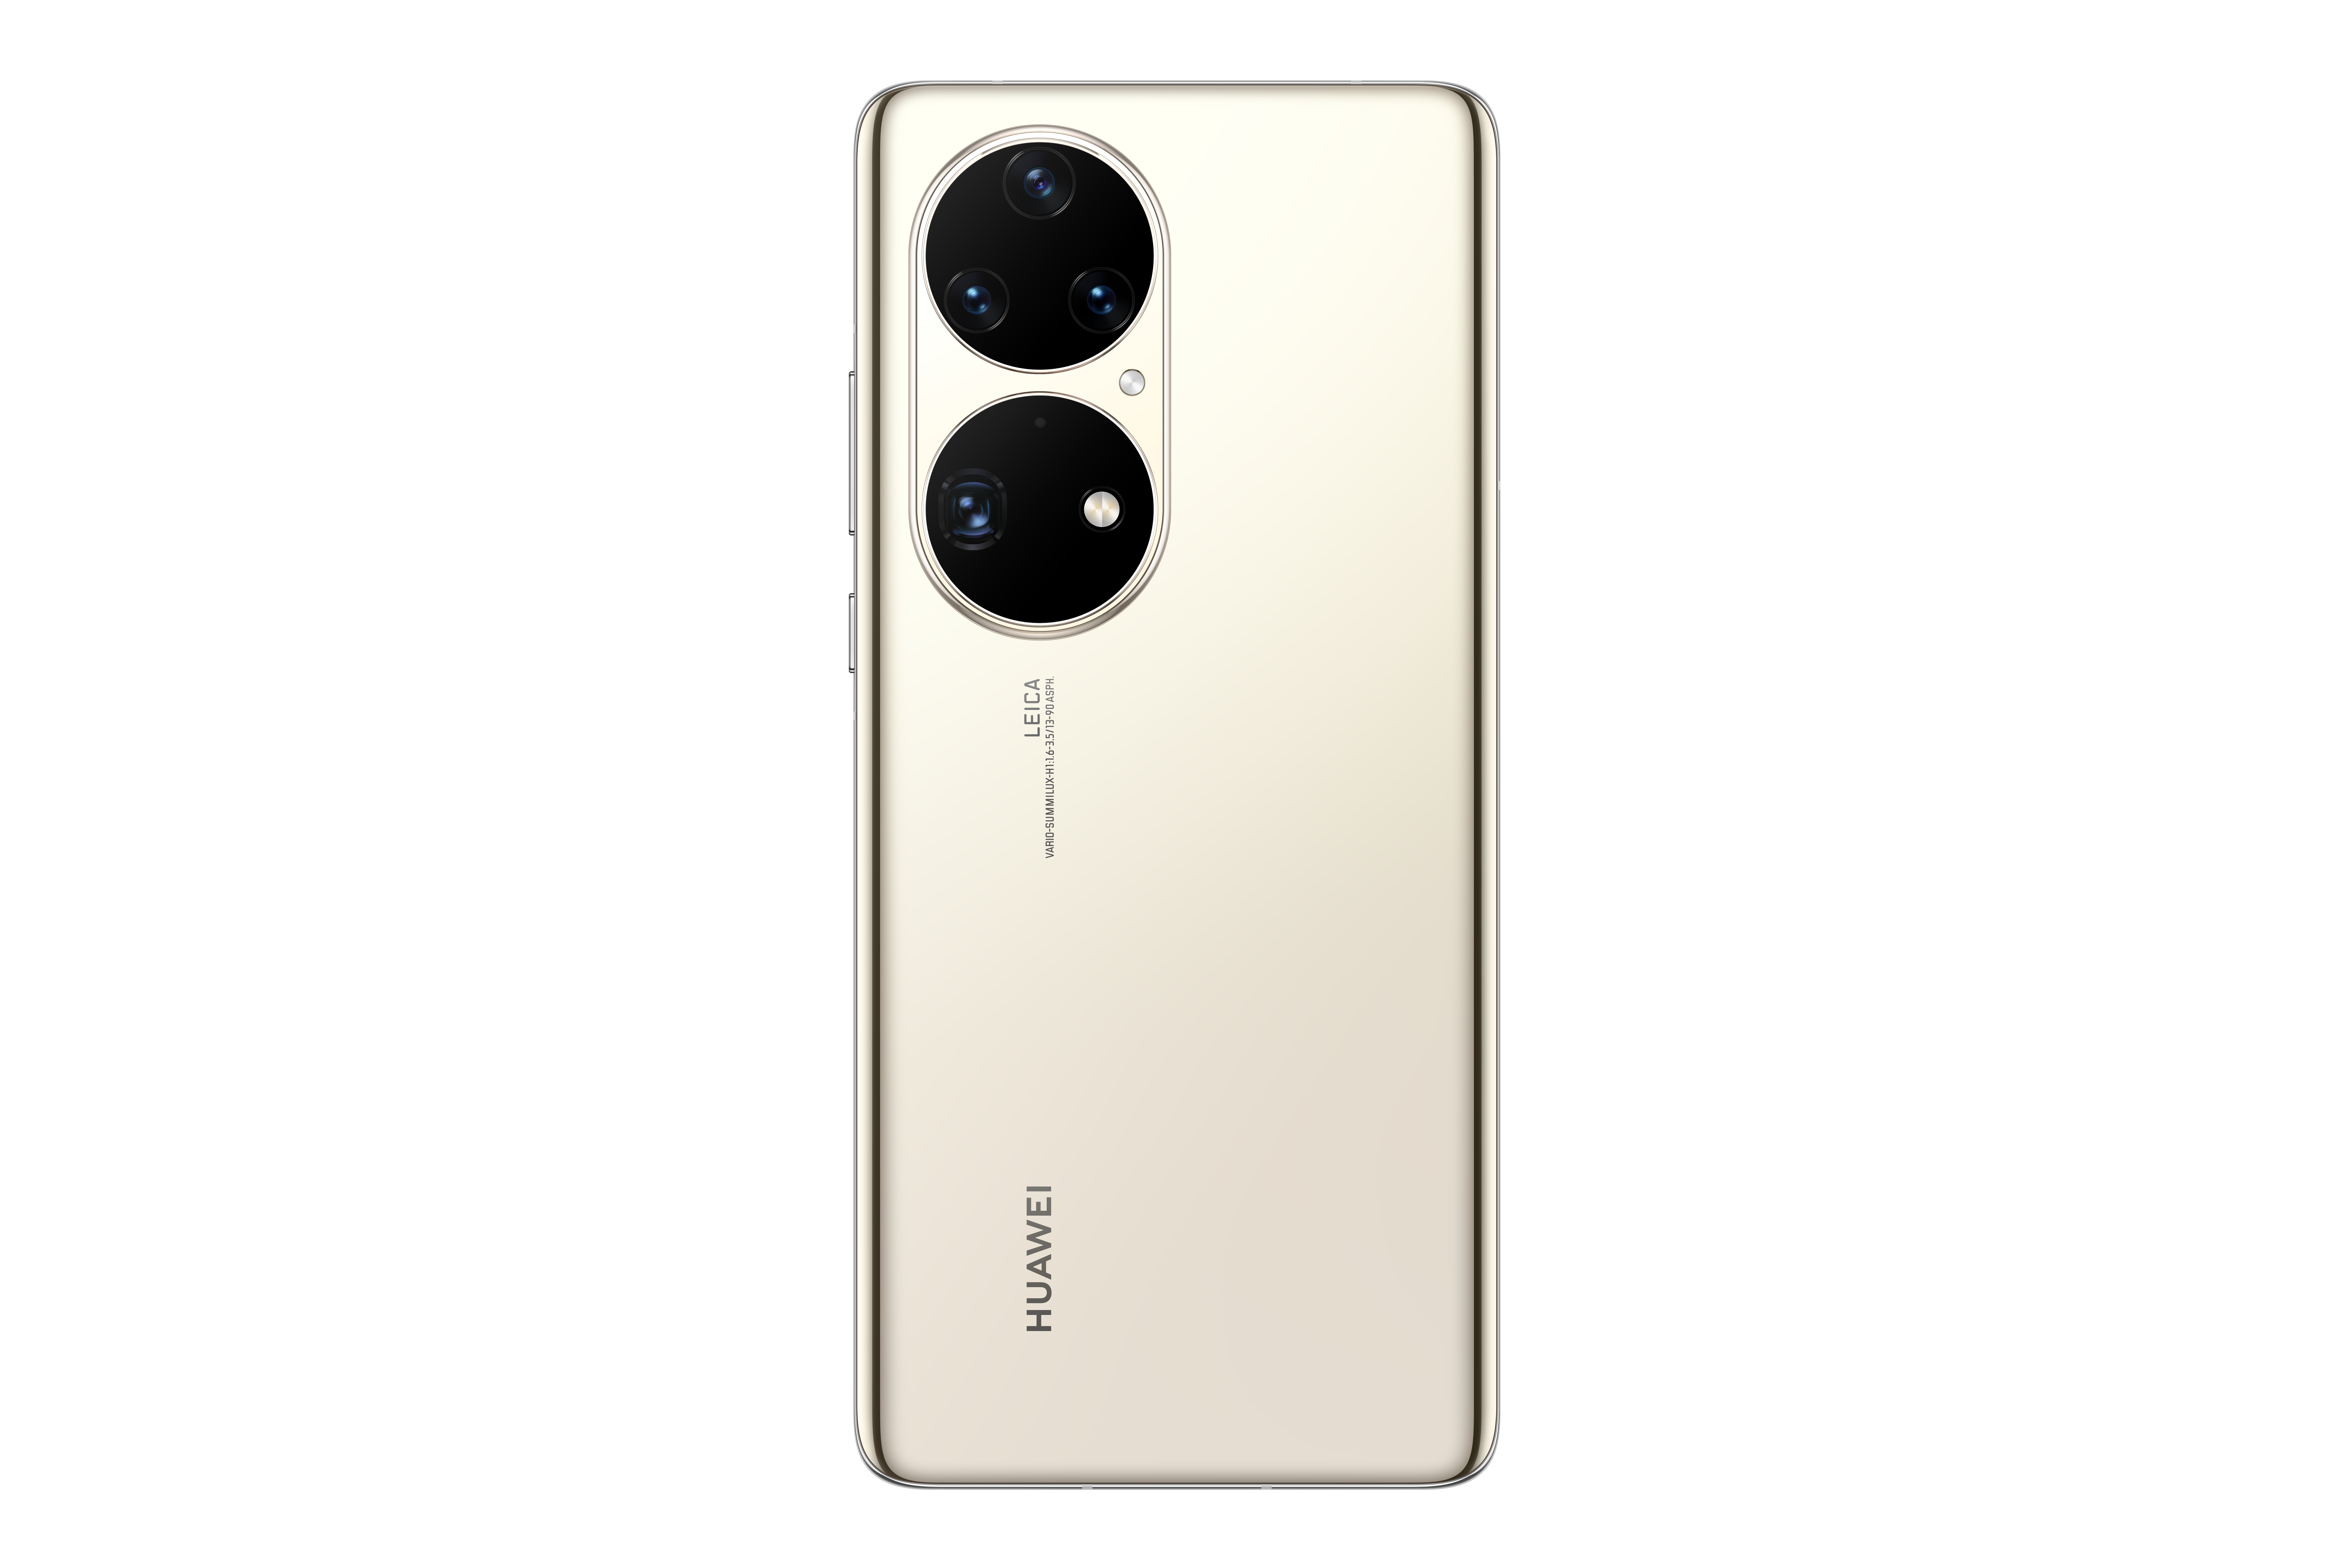 Nový Huawei P50 Pro je ztělesněním nové éry fotomobilů